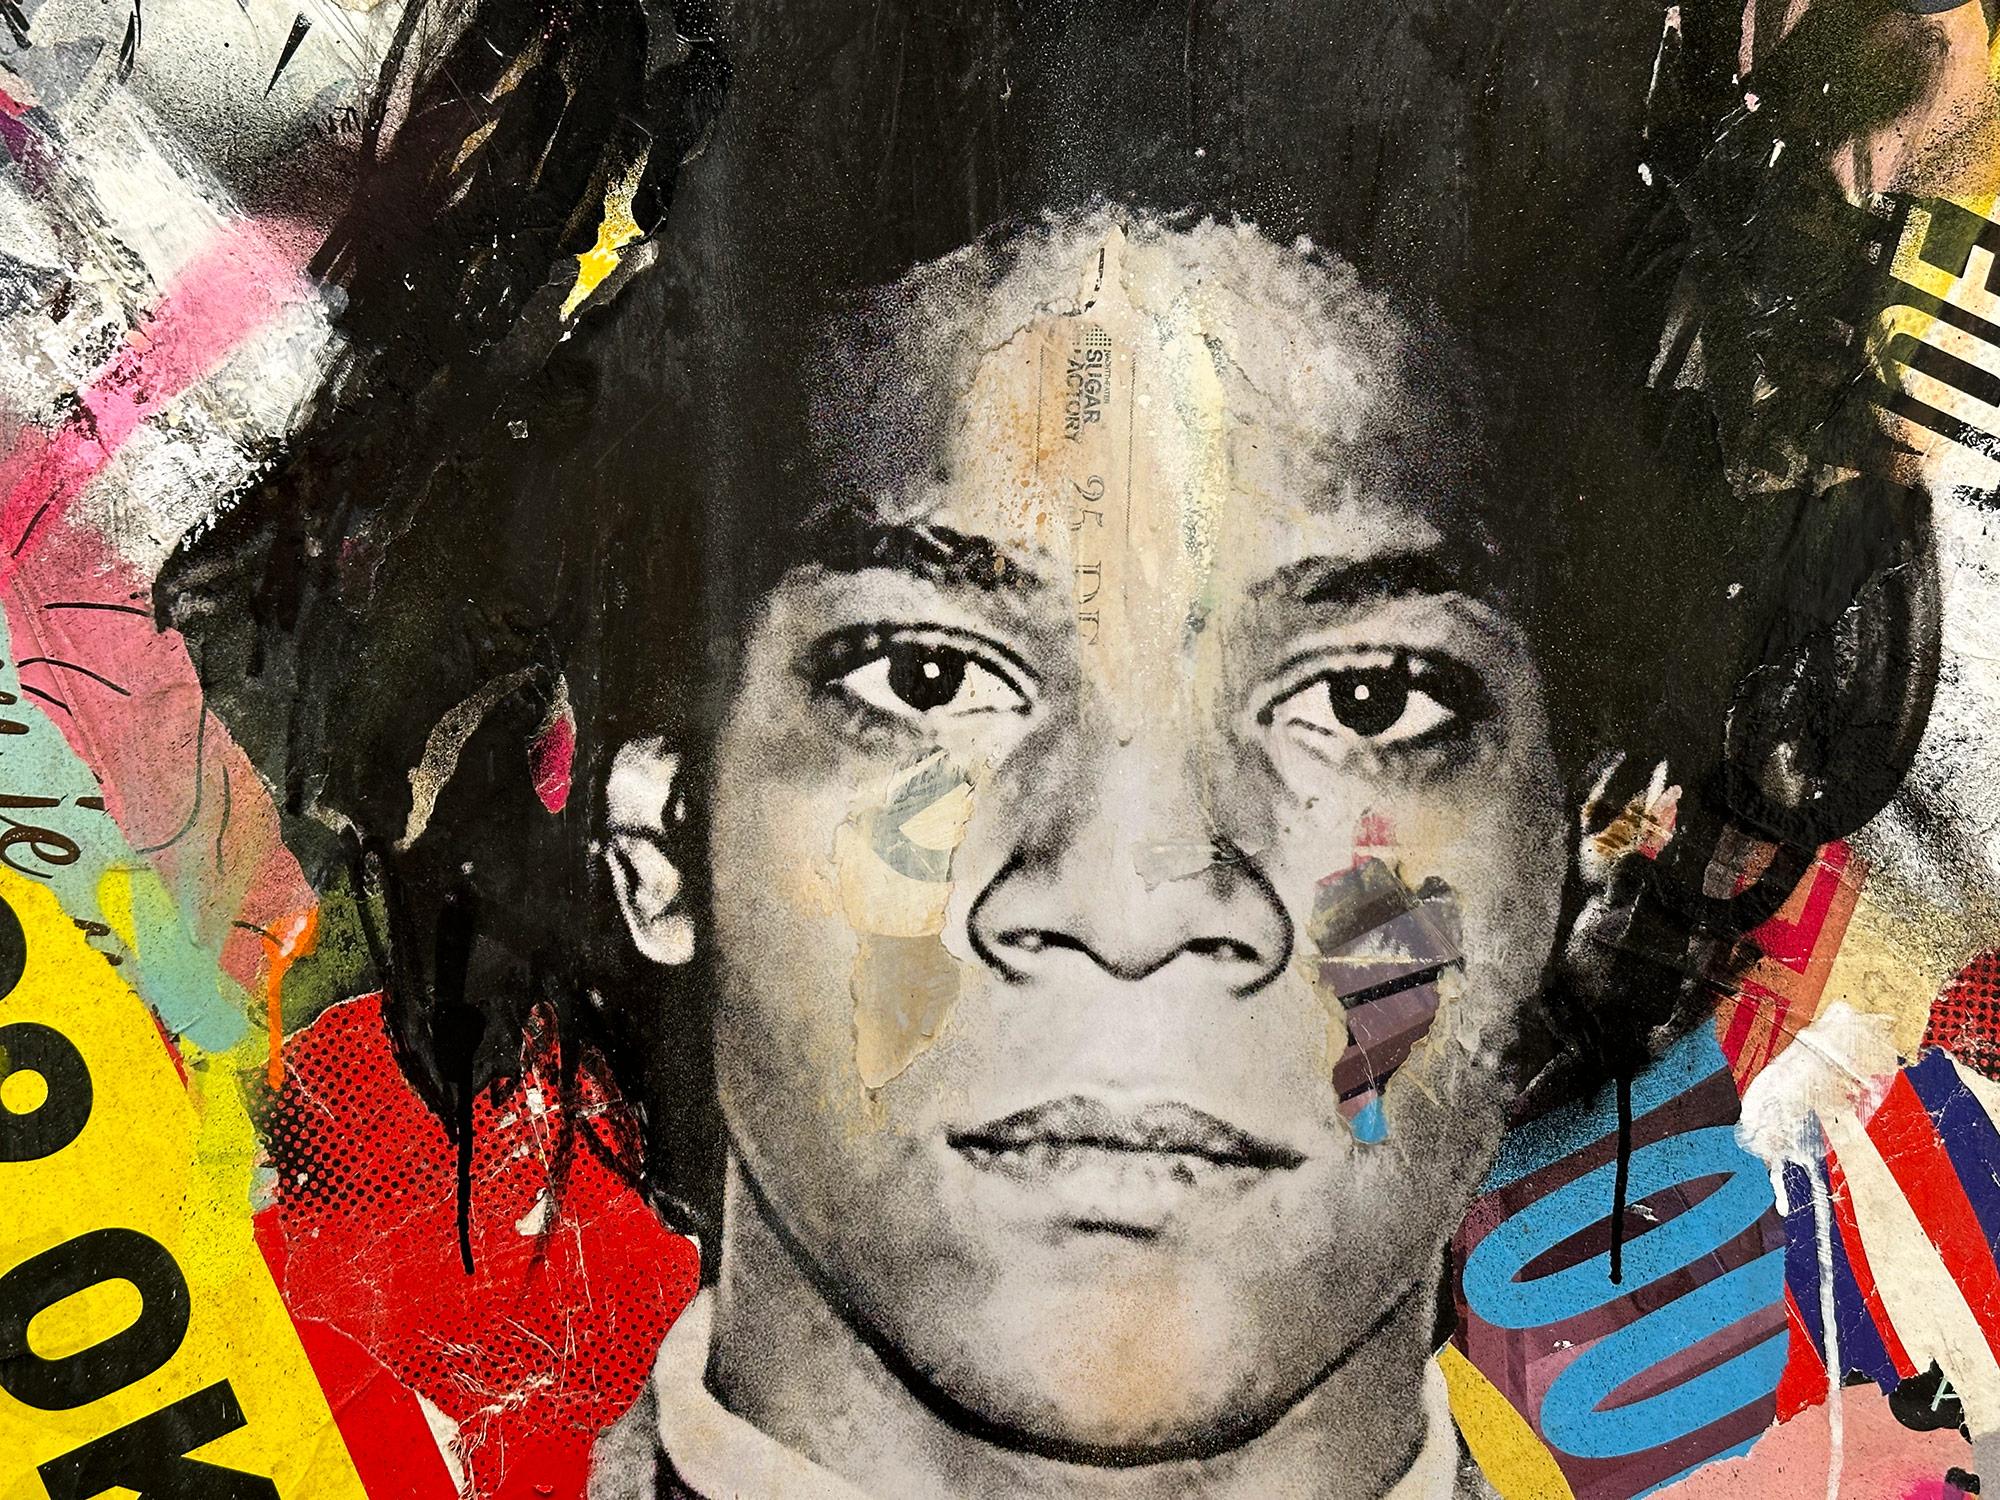 Dieses Werk stellt den berühmten Künstler Jean-Michel Basquiat dar. Mit wunderschönen, ausdrucksstarken Farben und einem unverwechselbaren Street-Art-Design versprüht dieses Stück Energie und romantische Schönheit. Die Komposition und die kühne